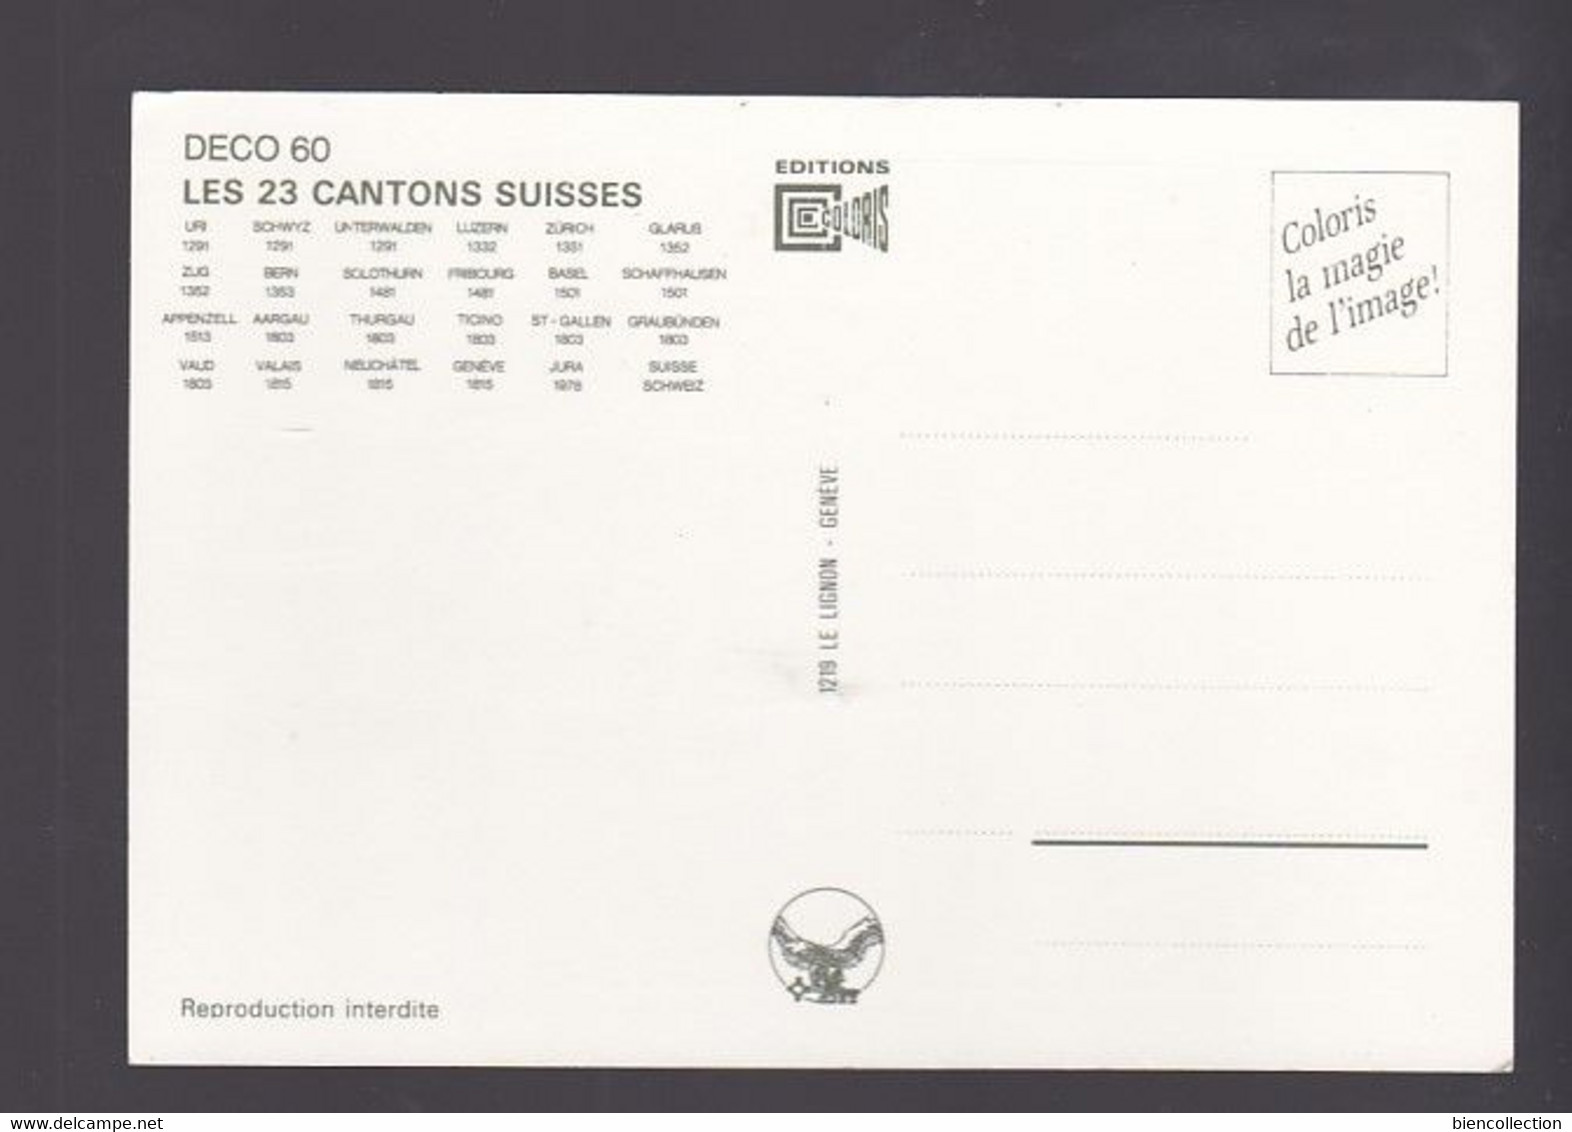 Suisse. Autocollant Vinyl Lavable Avec Les Armoiries De 23 Cantons Suisse - St. Anton